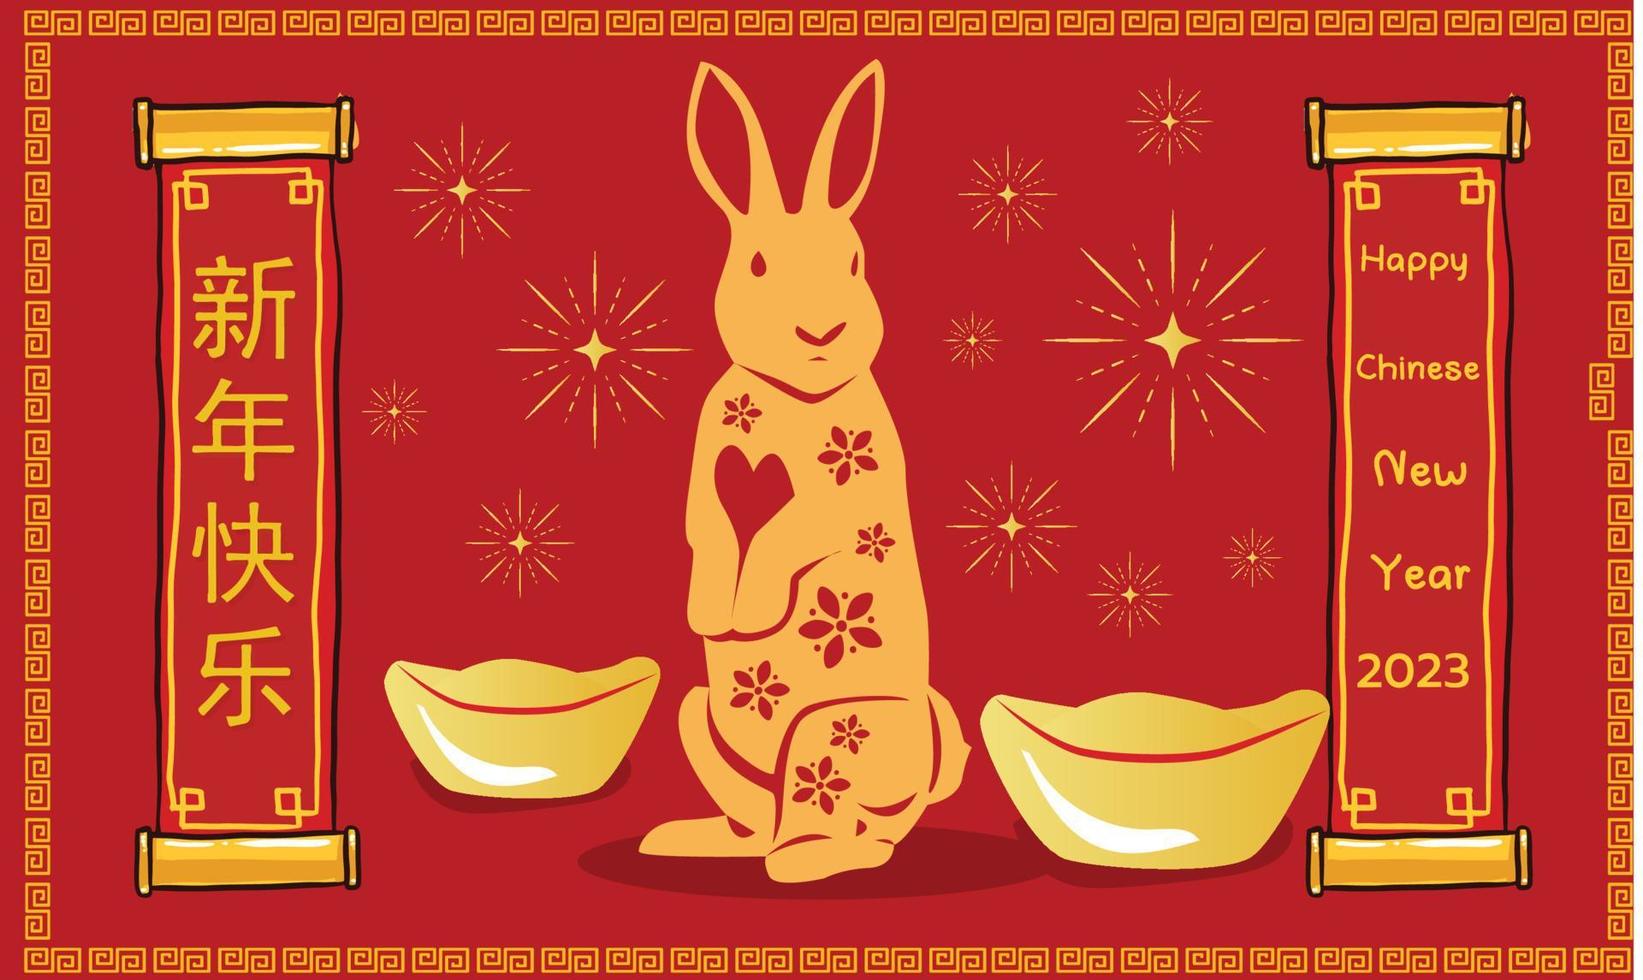 contento Cinese nuovo anno 2023, anno di il coniglio, contento nuovo anno illustrazione per manifesti, carte, calendari, segni, striscioni, siti web, pubblico relazioni e altro disegni vettore